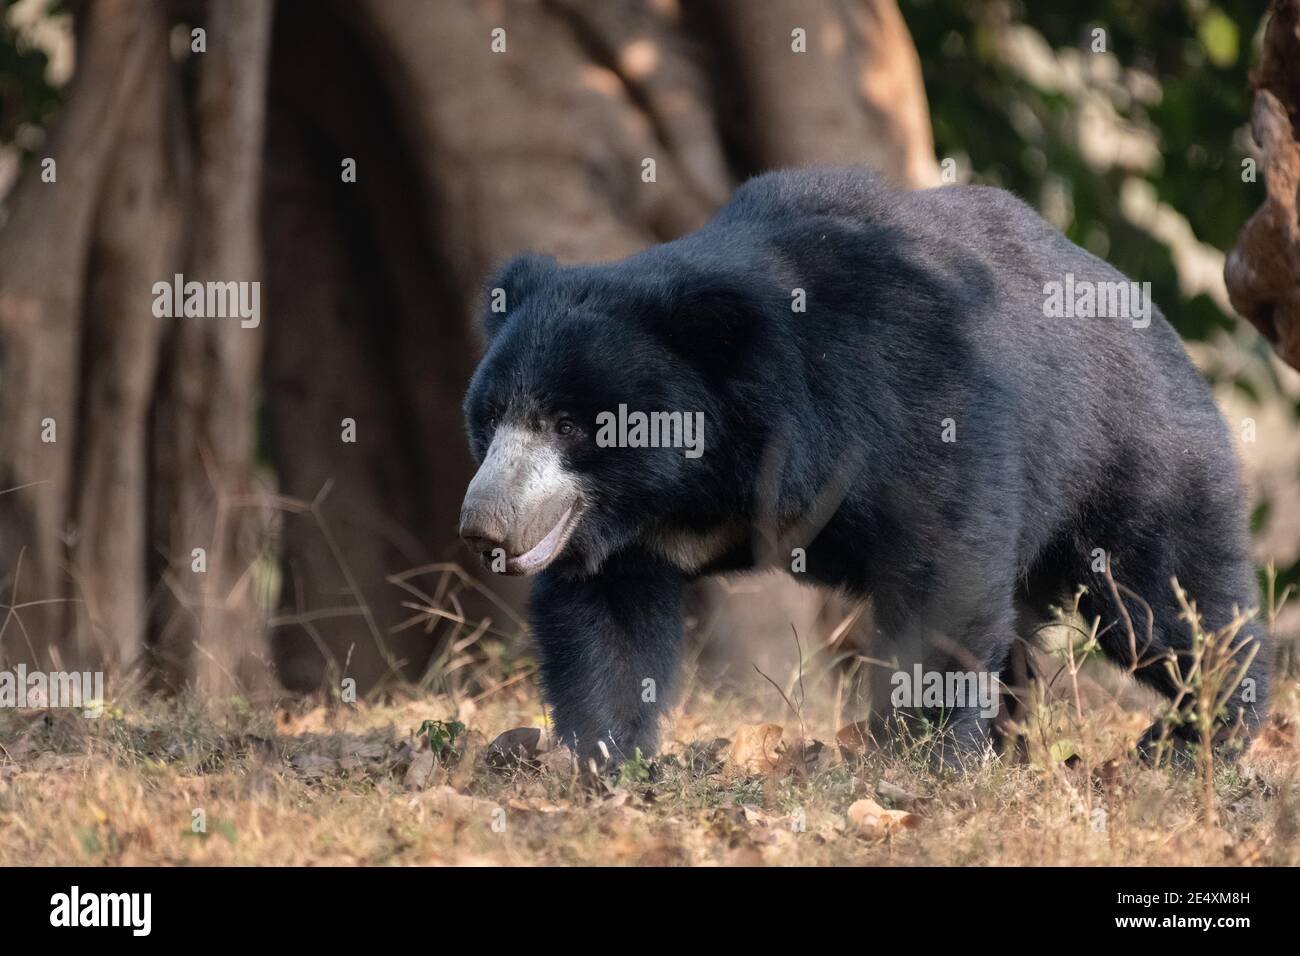 Un grand ours de Seth adulte (Melursus ursinus), se promènait dans les forêts de la réserve de tigres de Ranthambore au Rajasthan, en Inde. Banque D'Images